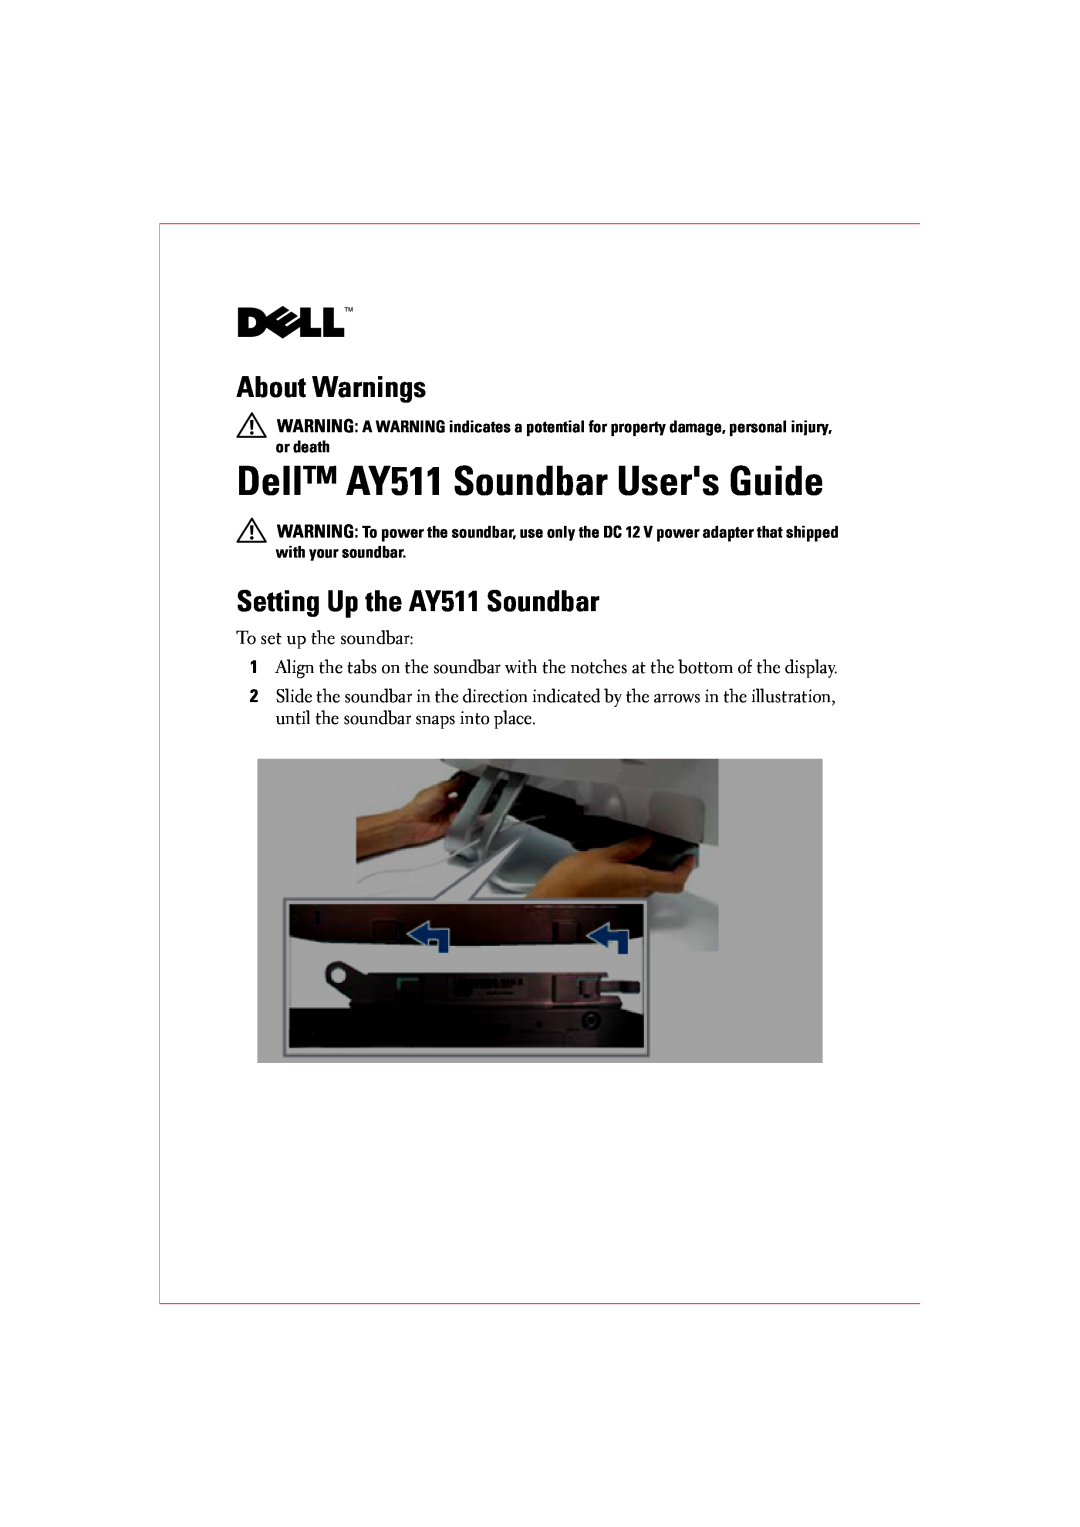 Dell AY511 manual Setting Up Your Speaker, 警告： 警告：, Achtung, Avertissement, Aviso, Varoitus, Advertencia, Allarme, Varning 